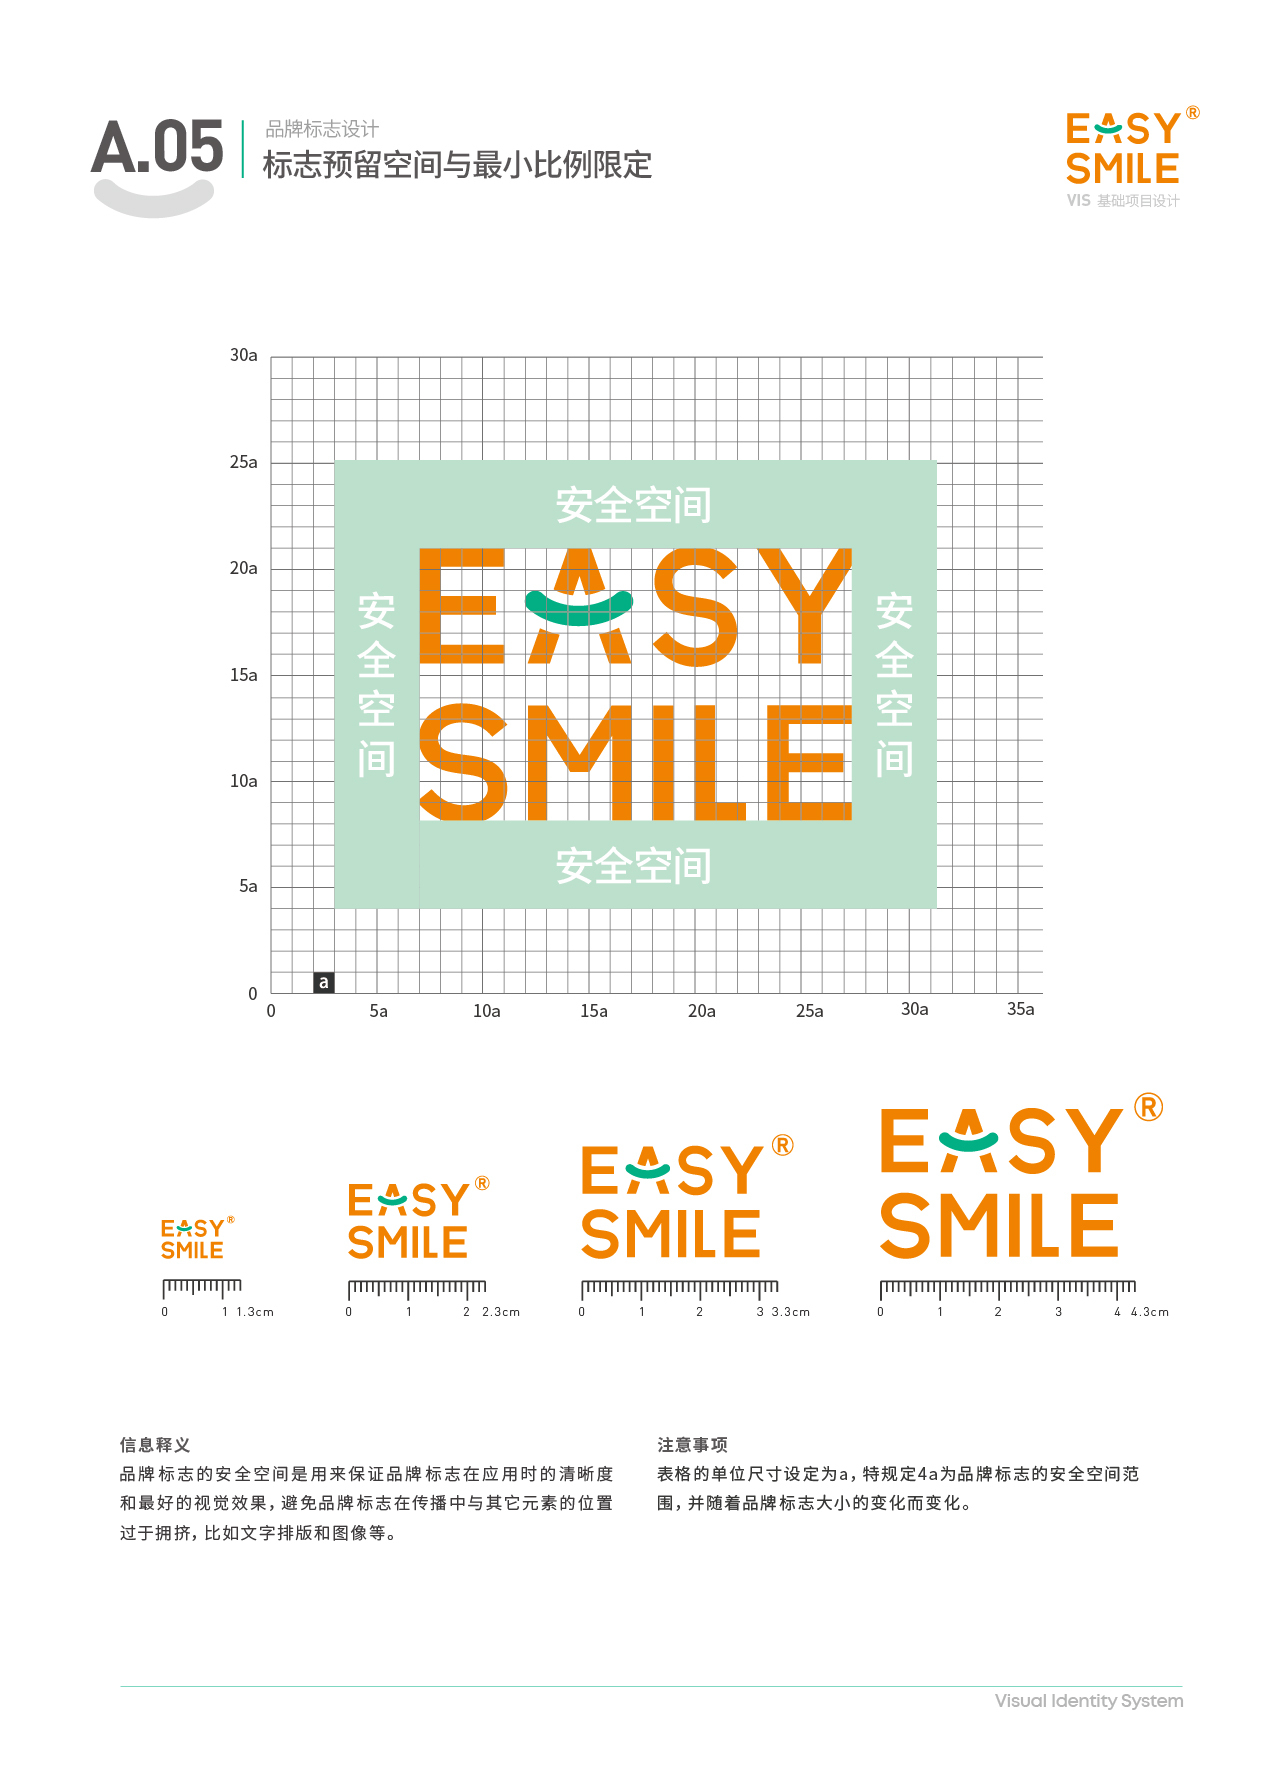 Easysmile 轻松笑品牌VIS图8